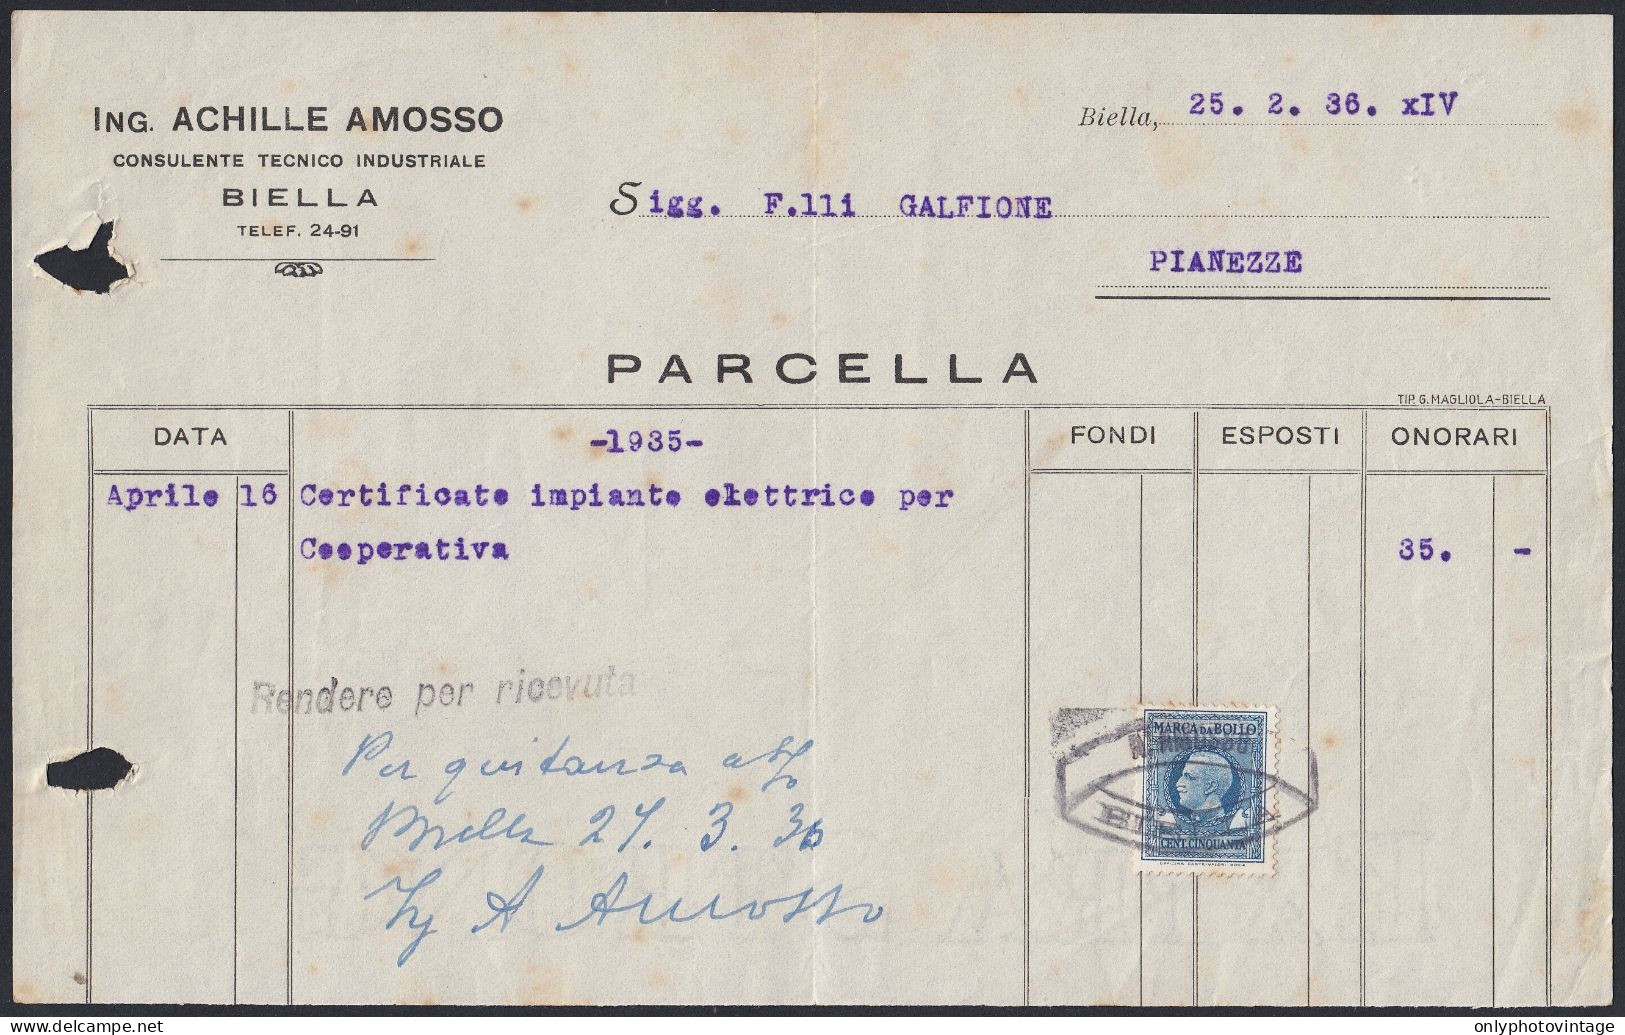 Biella 1936 - Ing. Achille Amosso - Consulente Tecnico Industriale - Italy